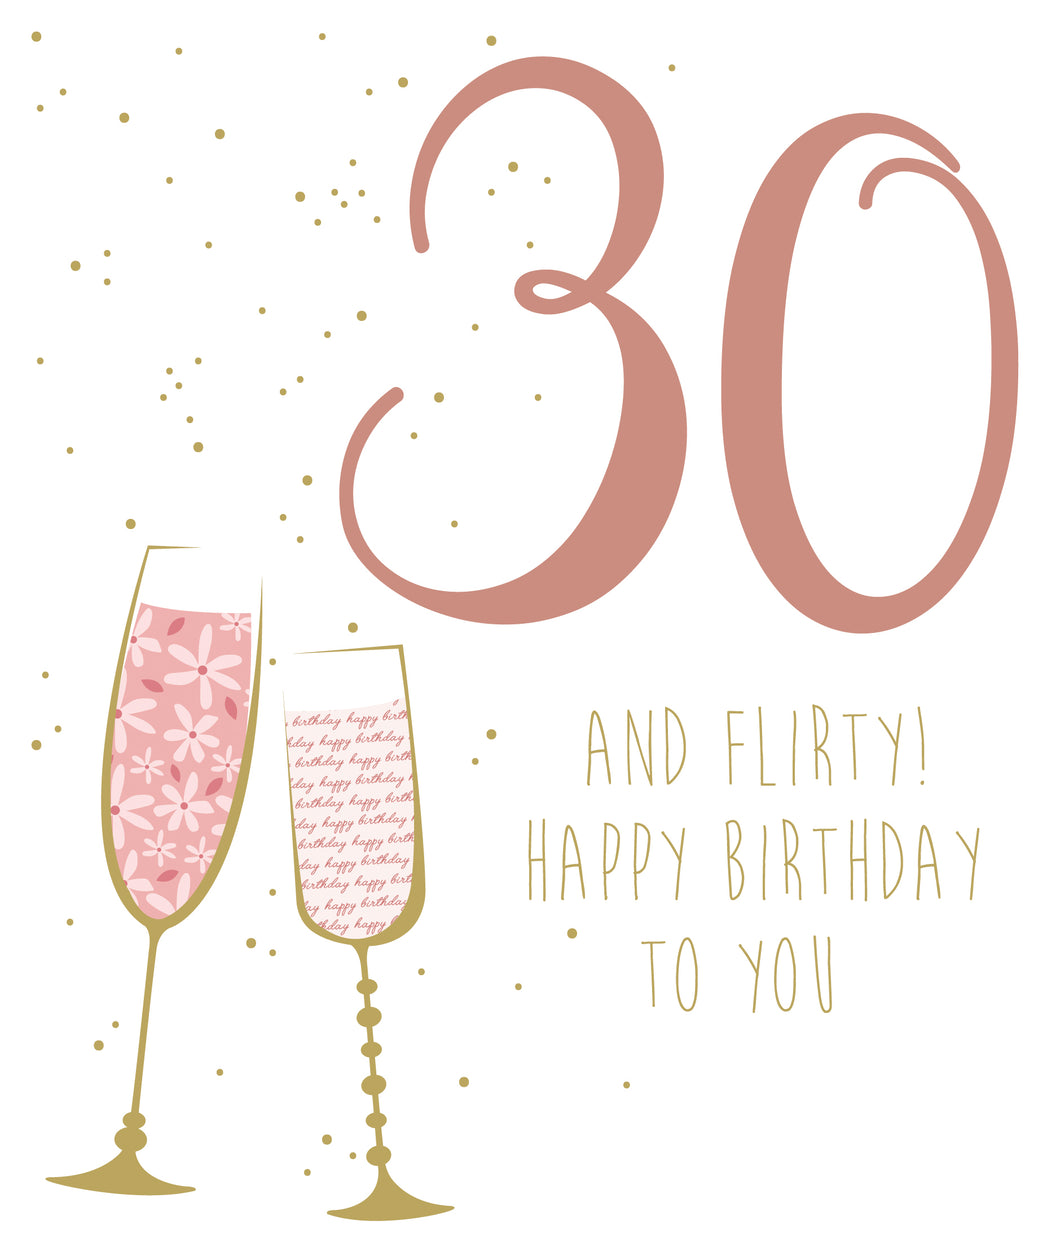 30th Birthday - Birthday Cards